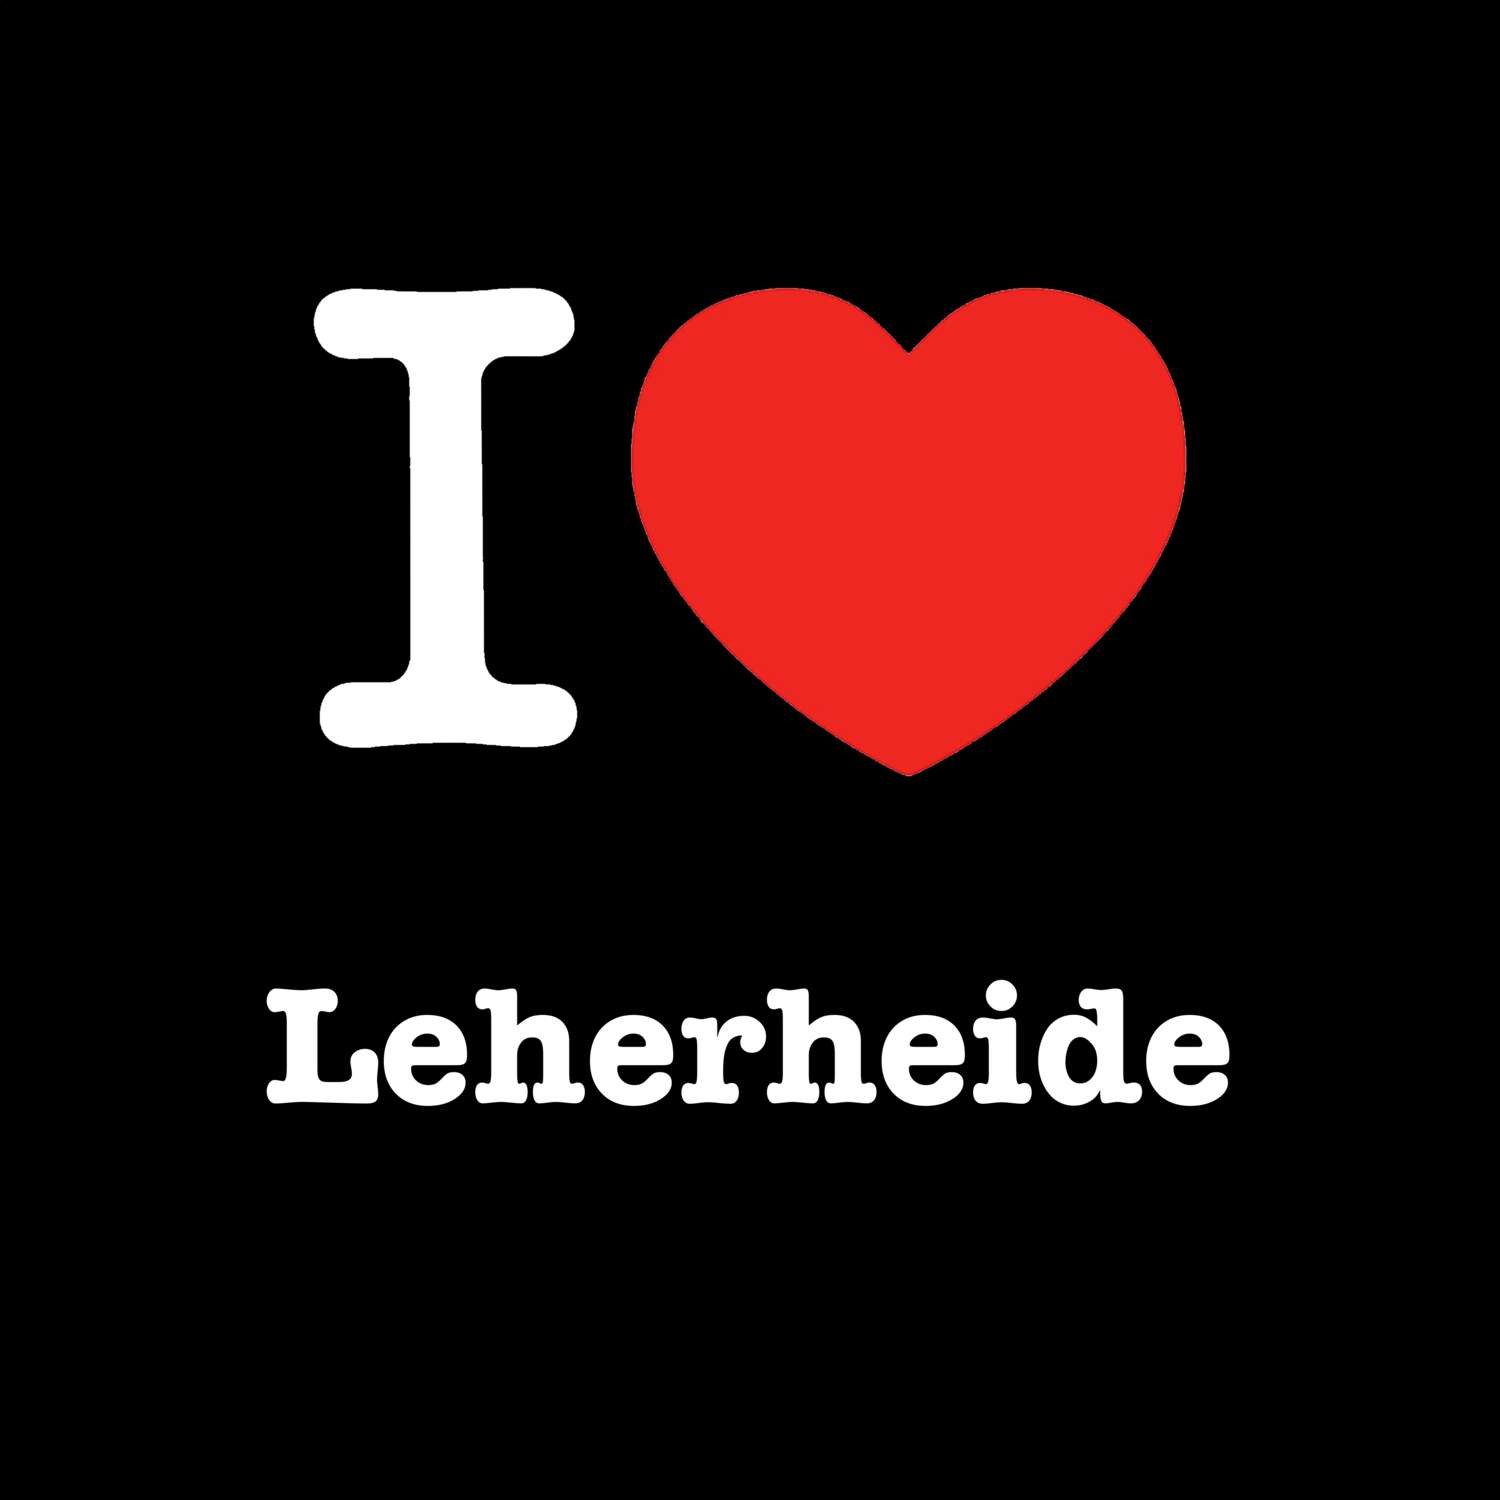 Leherheide T-Shirt »I love«